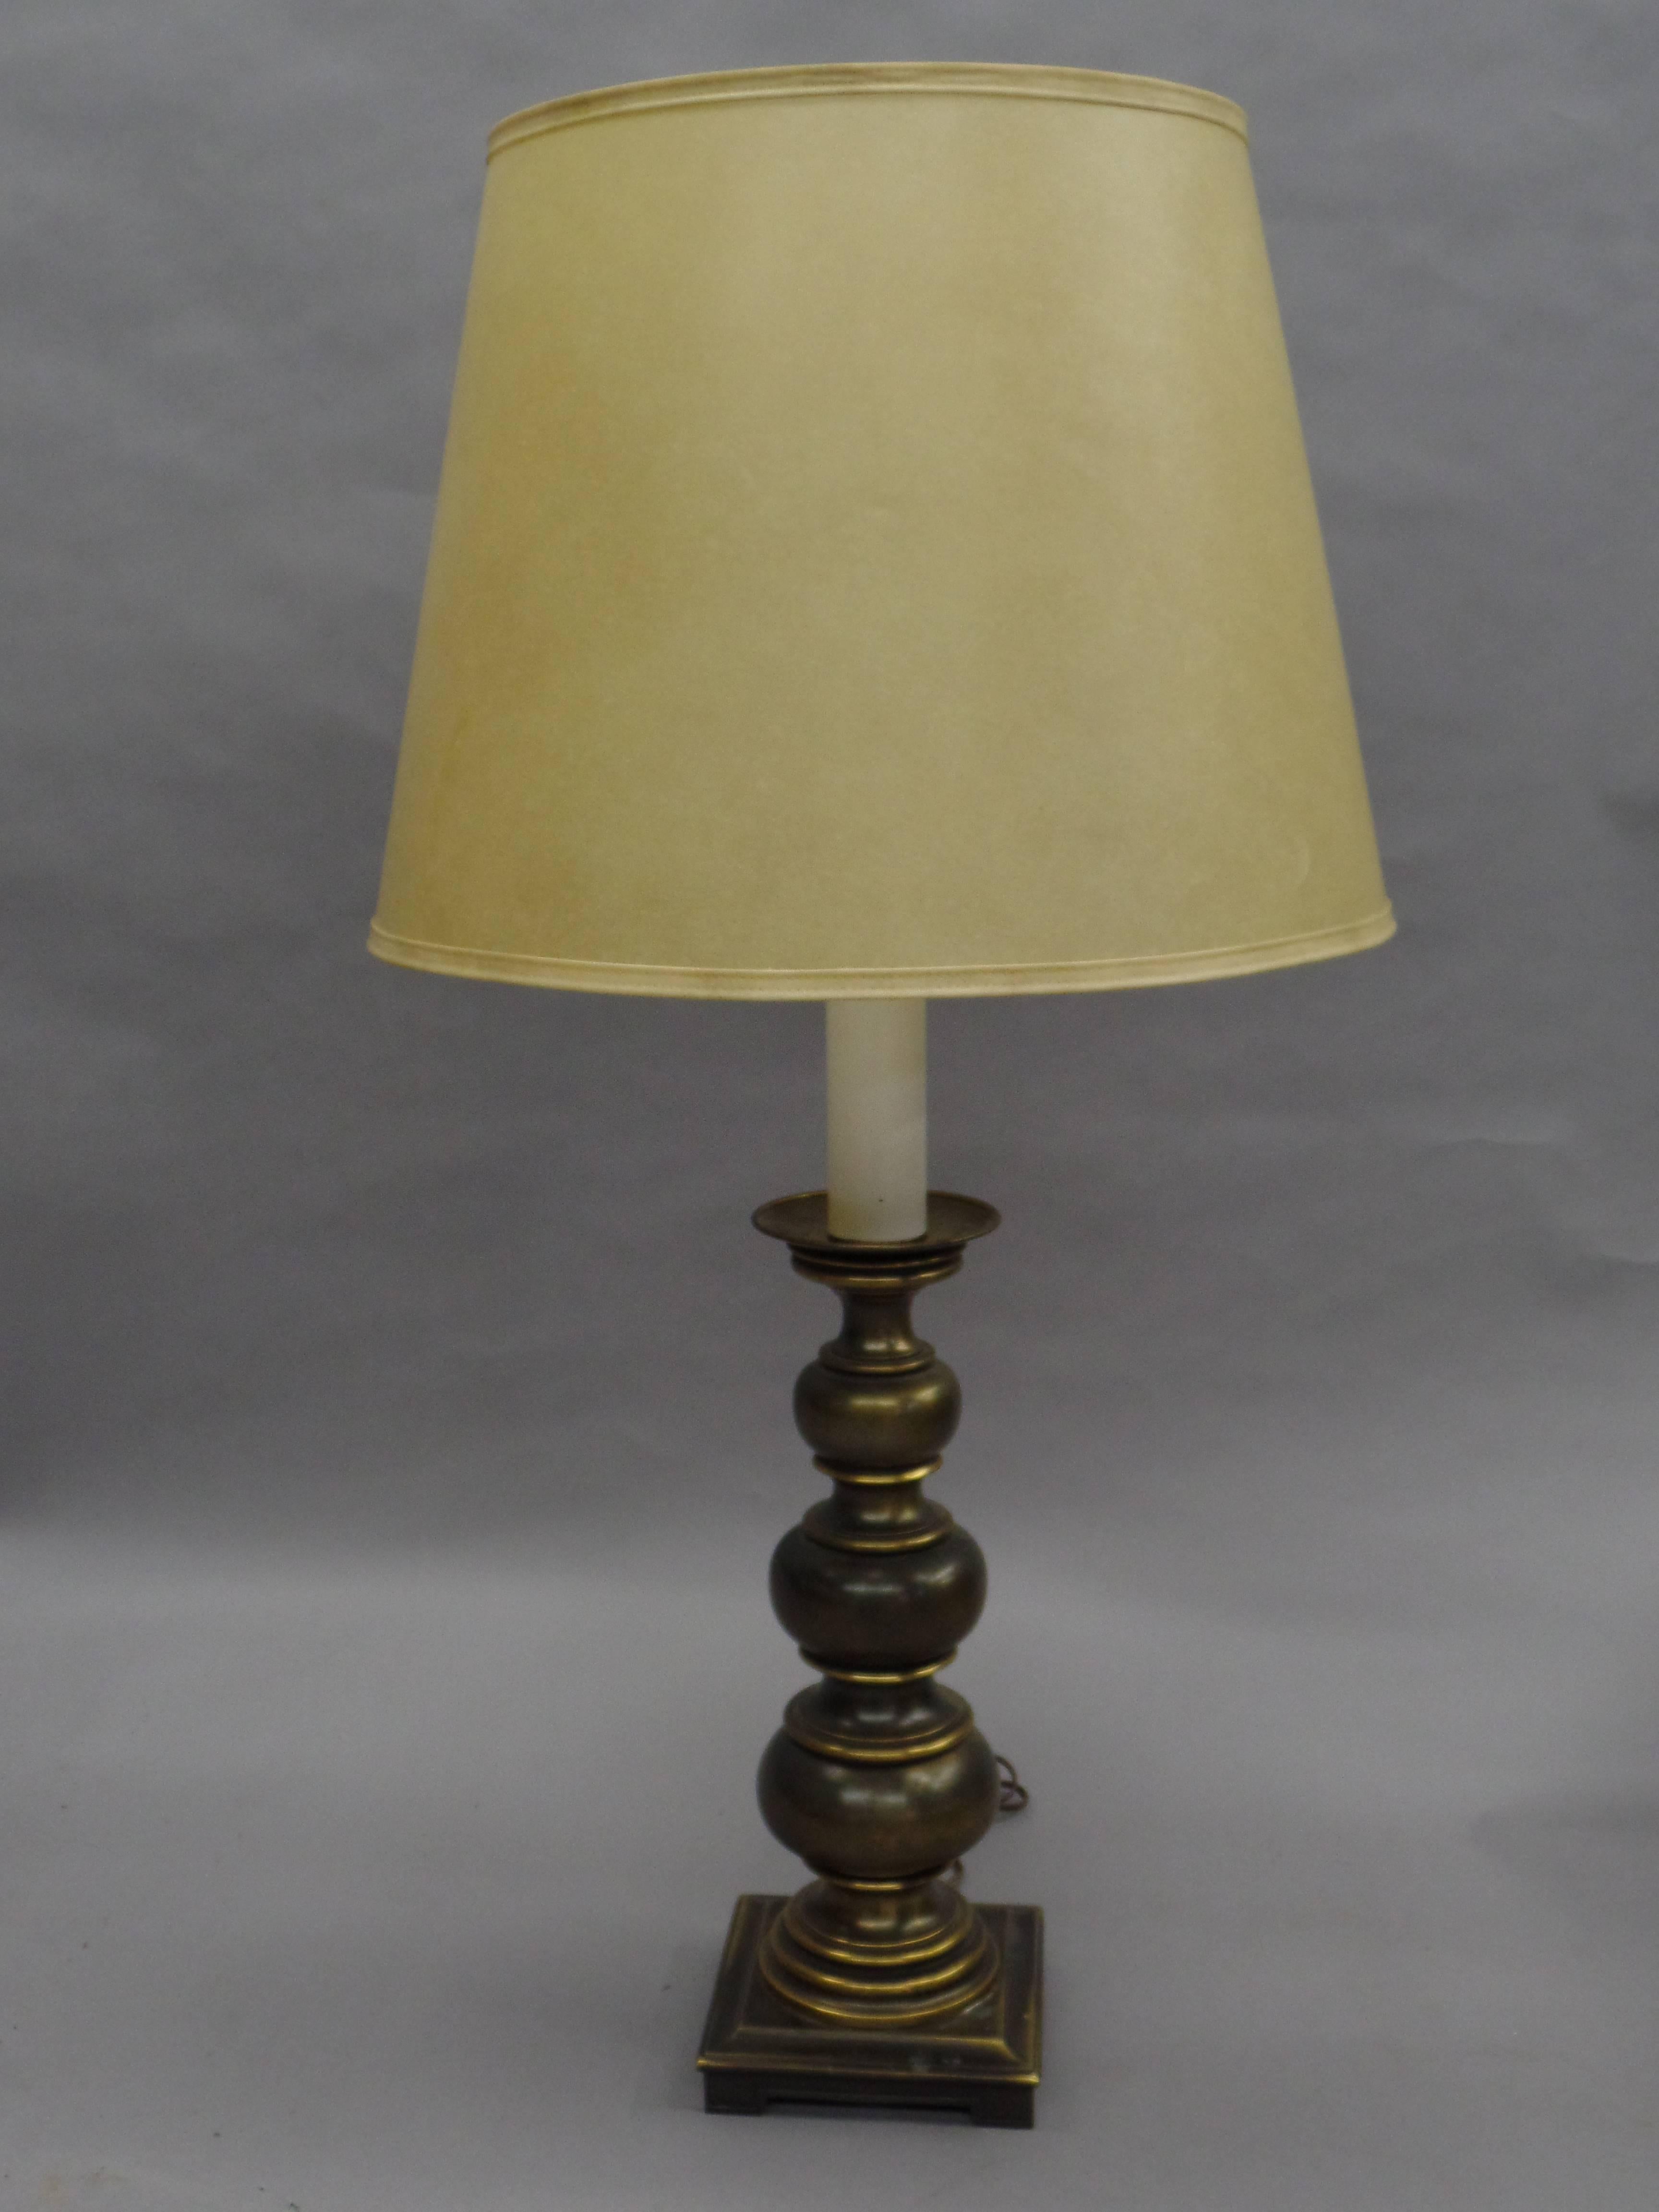 Élégante paire de lampes à boules britanniques du milieu du siècle, dans l'esprit néoclassique moderne, avec une série graduée de boules en laiton reposant sur une base carrée.

La hauteur totale telle que montrée est de 39